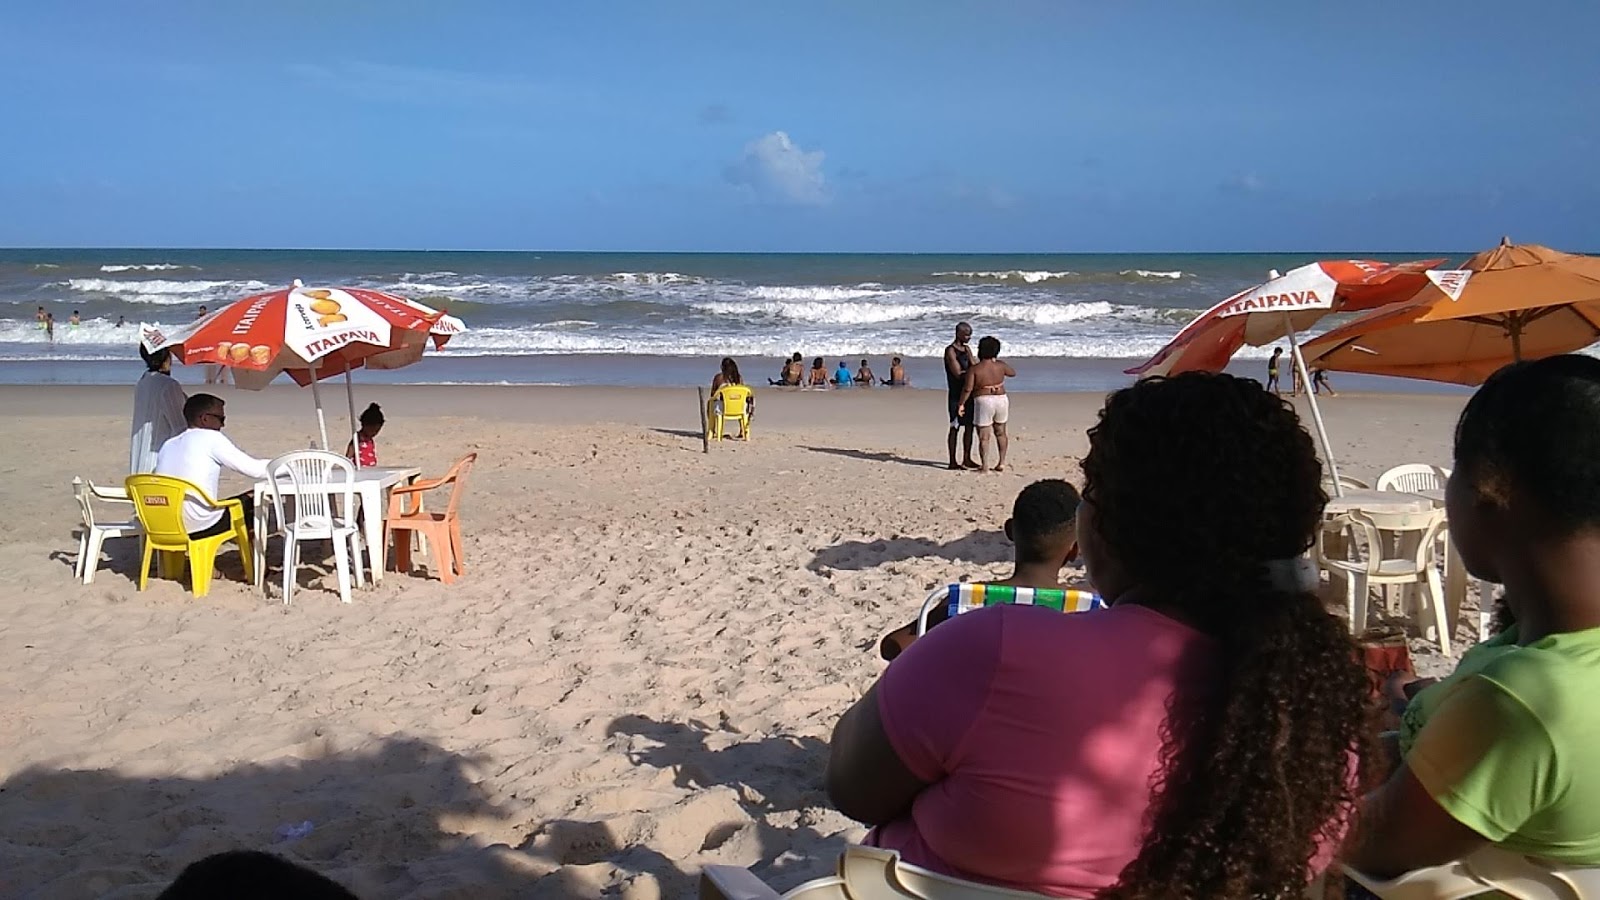 Praia de Siribinha的照片 具有非常干净级别的清洁度